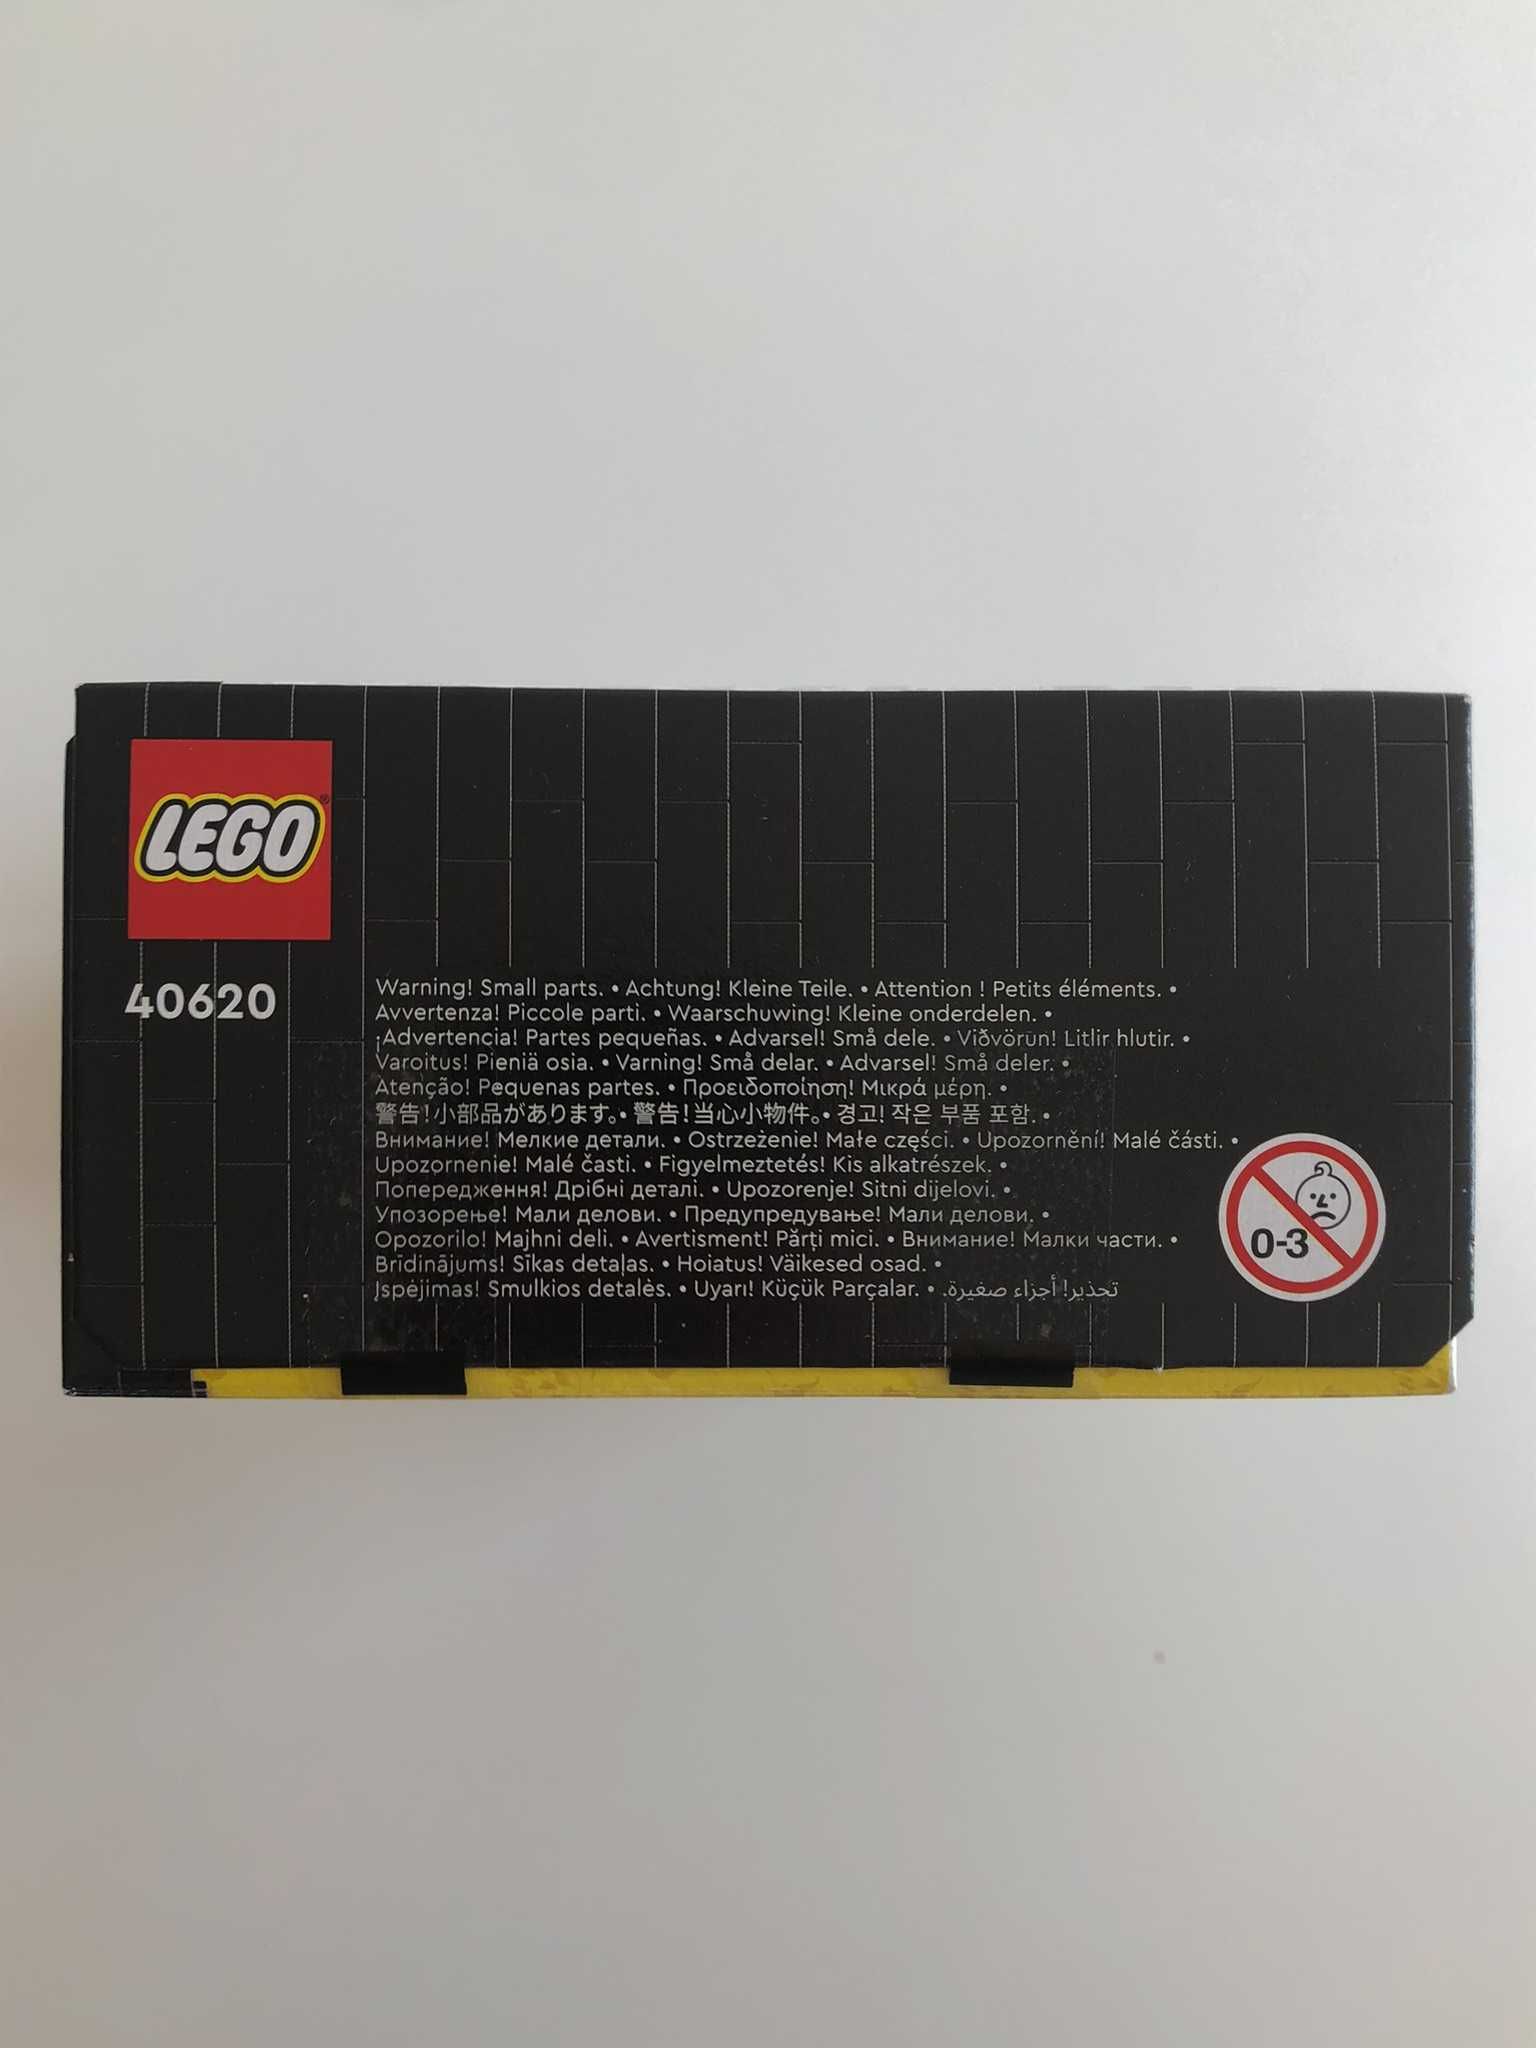 NOWY Zestaw LEGO 40620 Cruella i Diabolina; Świetny na prezent